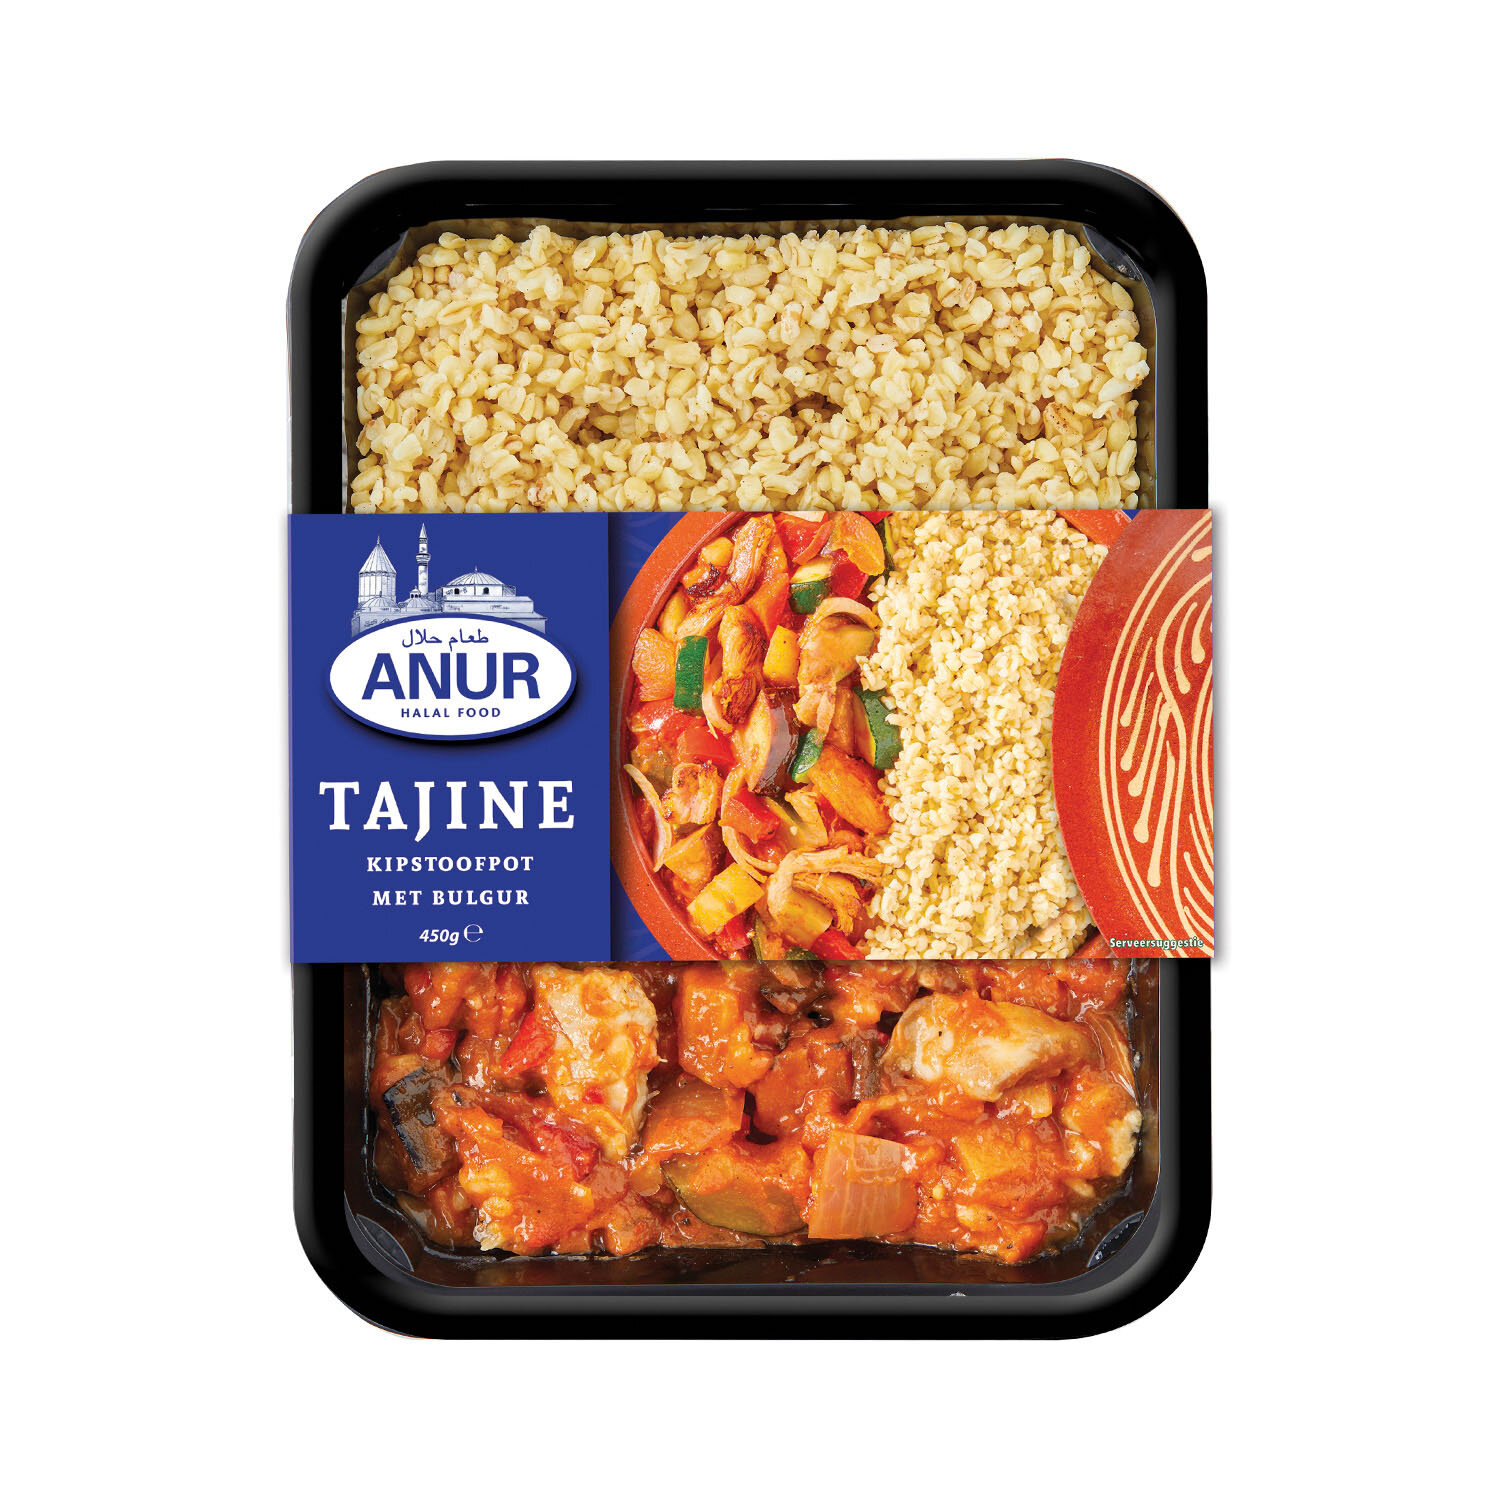 Tajine - Kipstoofpot met bulgur - ANUR Halal Food  (Copy) (Copy)